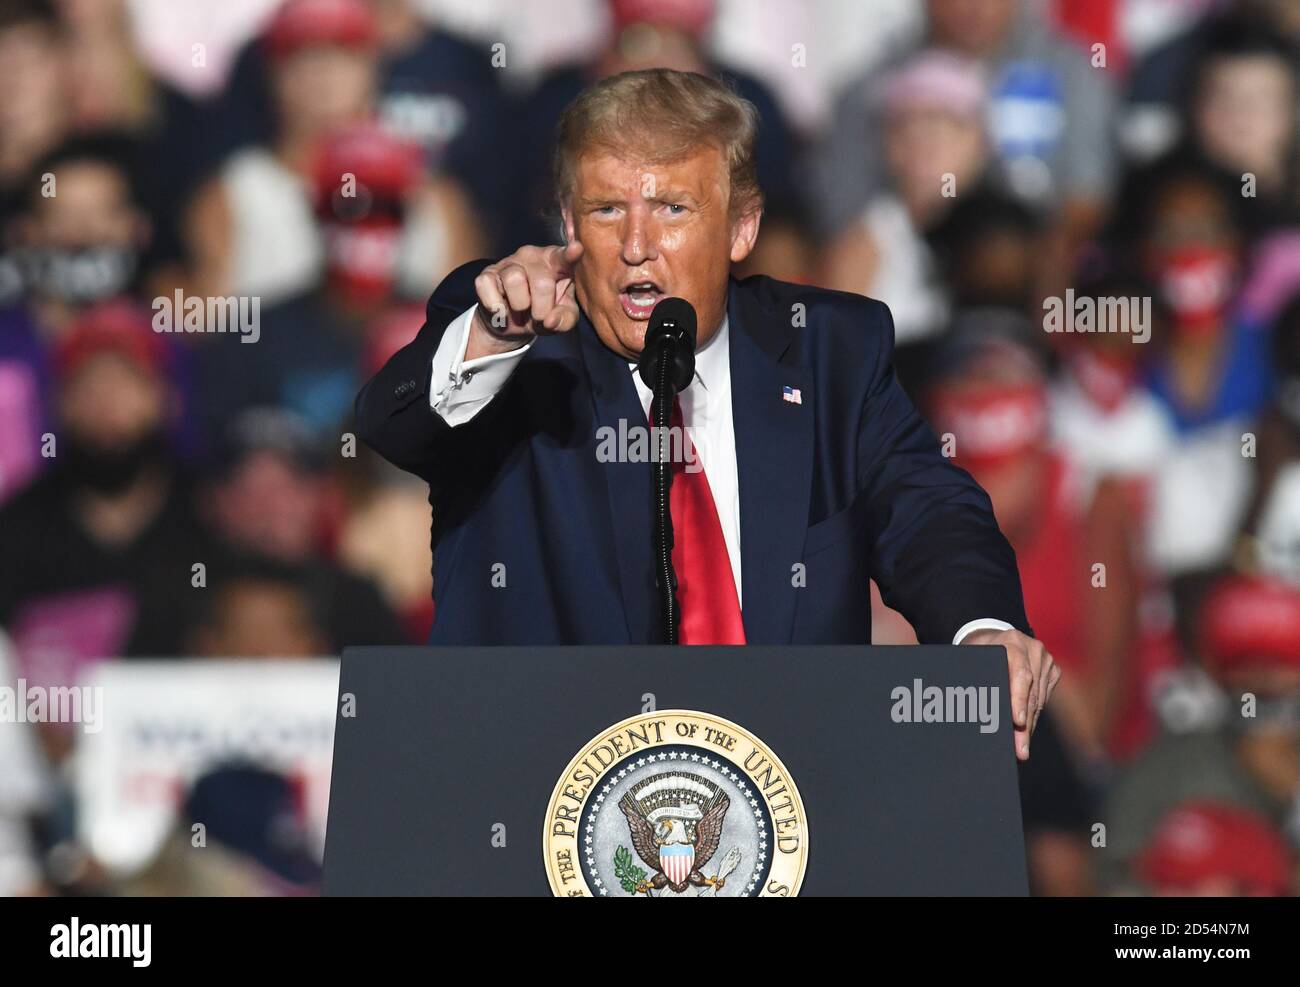 12 octobre 2020 - Sanford, Floride, États-Unis - le président américain Donald Trump s'exprime lors d'un rallye Make America Great Again, son premier rallye de campagne depuis la passation de contrats COVID-19, à l'aéroport international Orlando Sanford le 12 octobre 2020 à Sanford, en Floride. (Paul Hennessy/Alamy) Banque D'Images